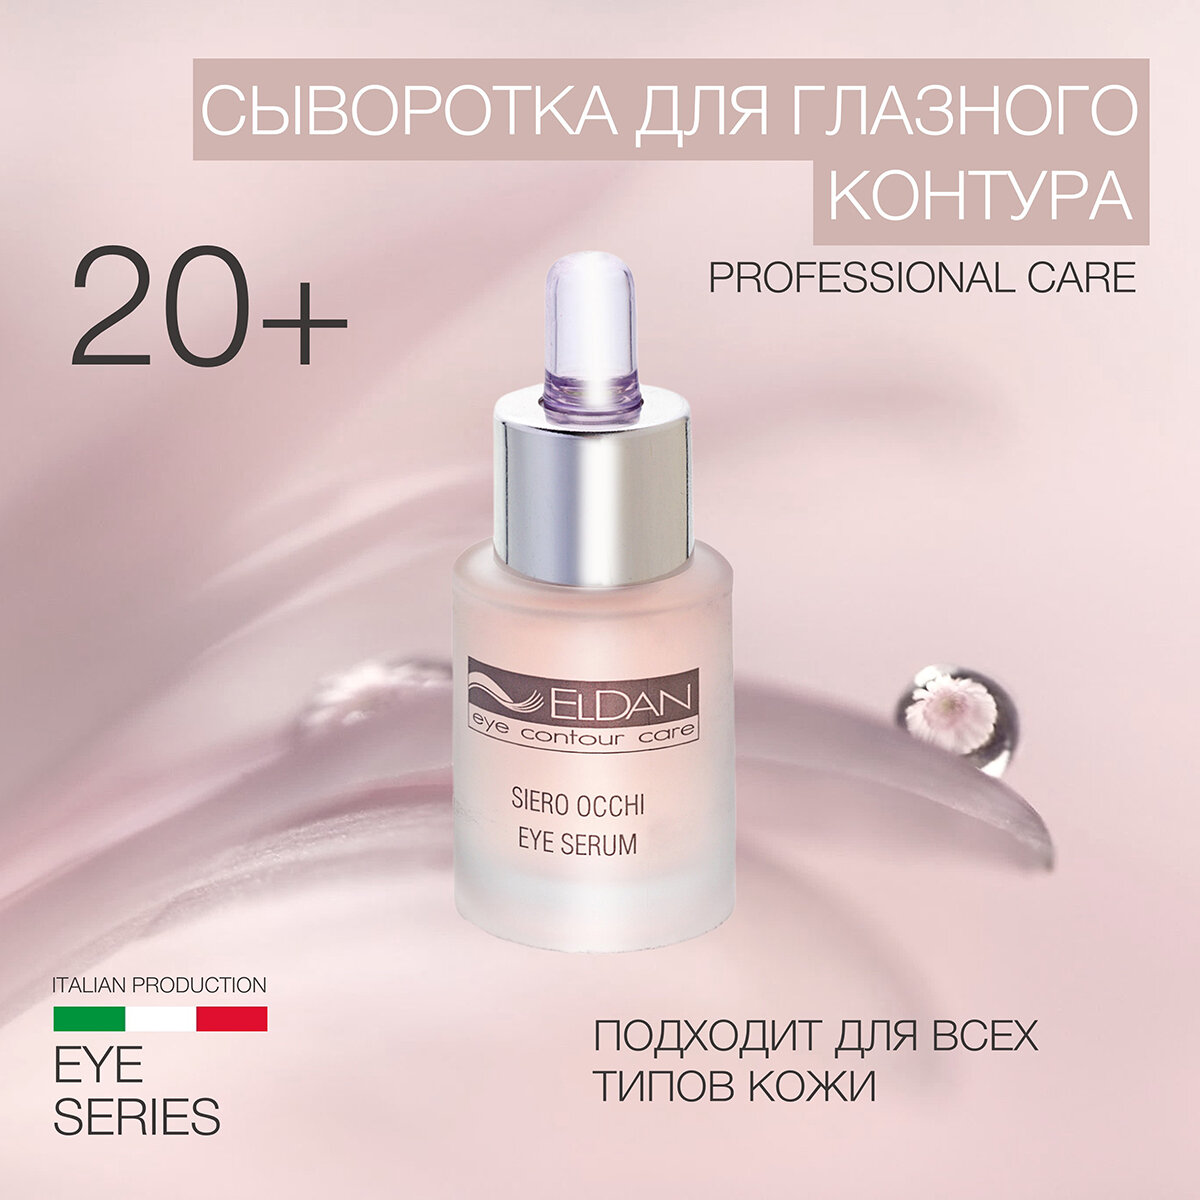 Сыворотка для глазного контура ELDAN cosmetics для любого типа кожи, 15 мл